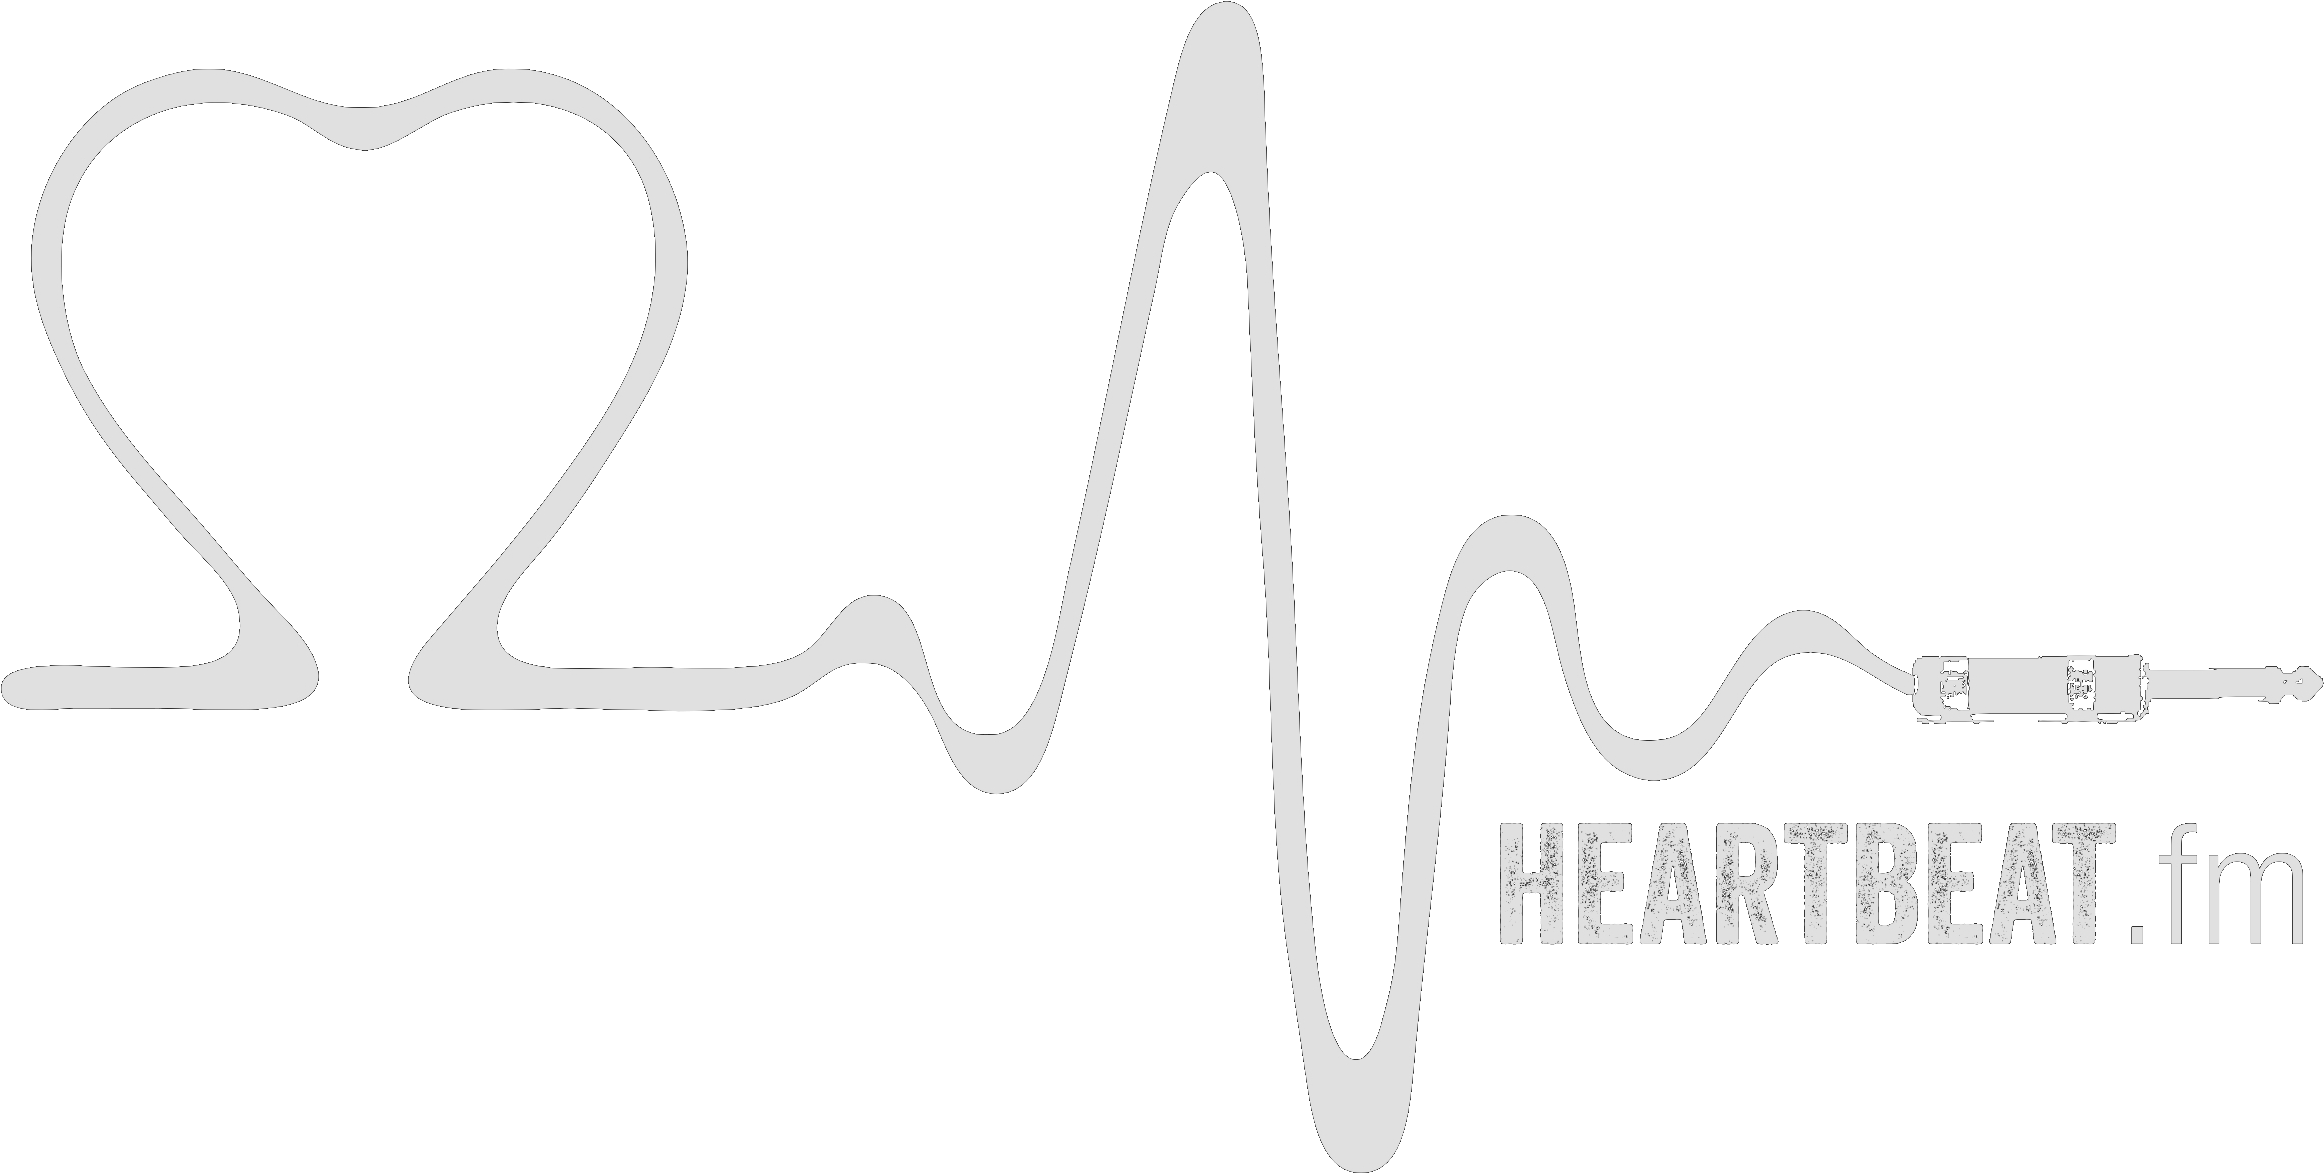 Cardio Imagen del PNG del latido del corazónn